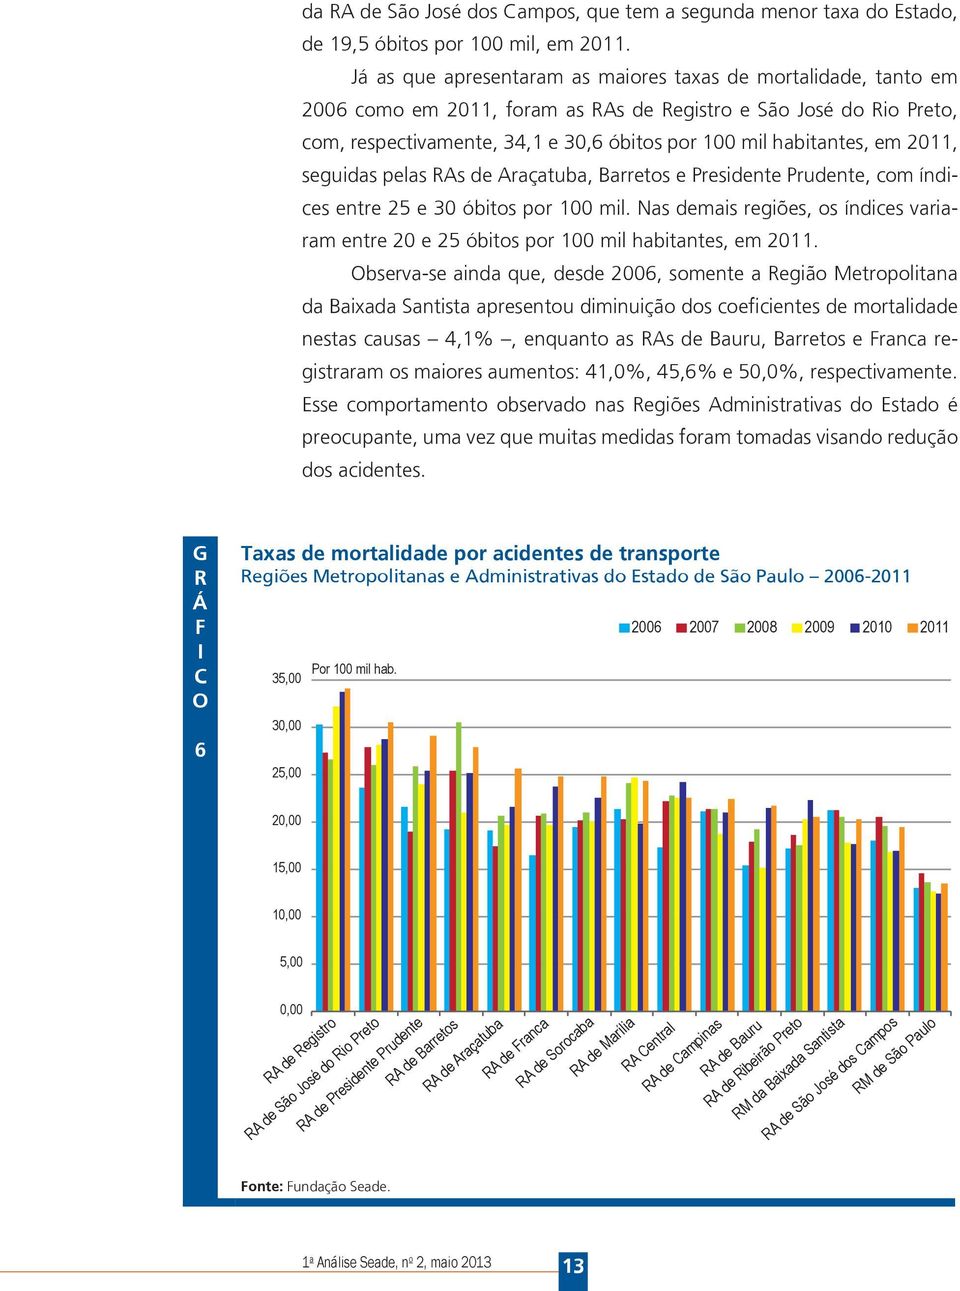 em 2011, seguidas pelas RAs de Araçatuba, Barretos e Presidente Prudente, com índices entre 25 e 30 óbitos por 100 mil.